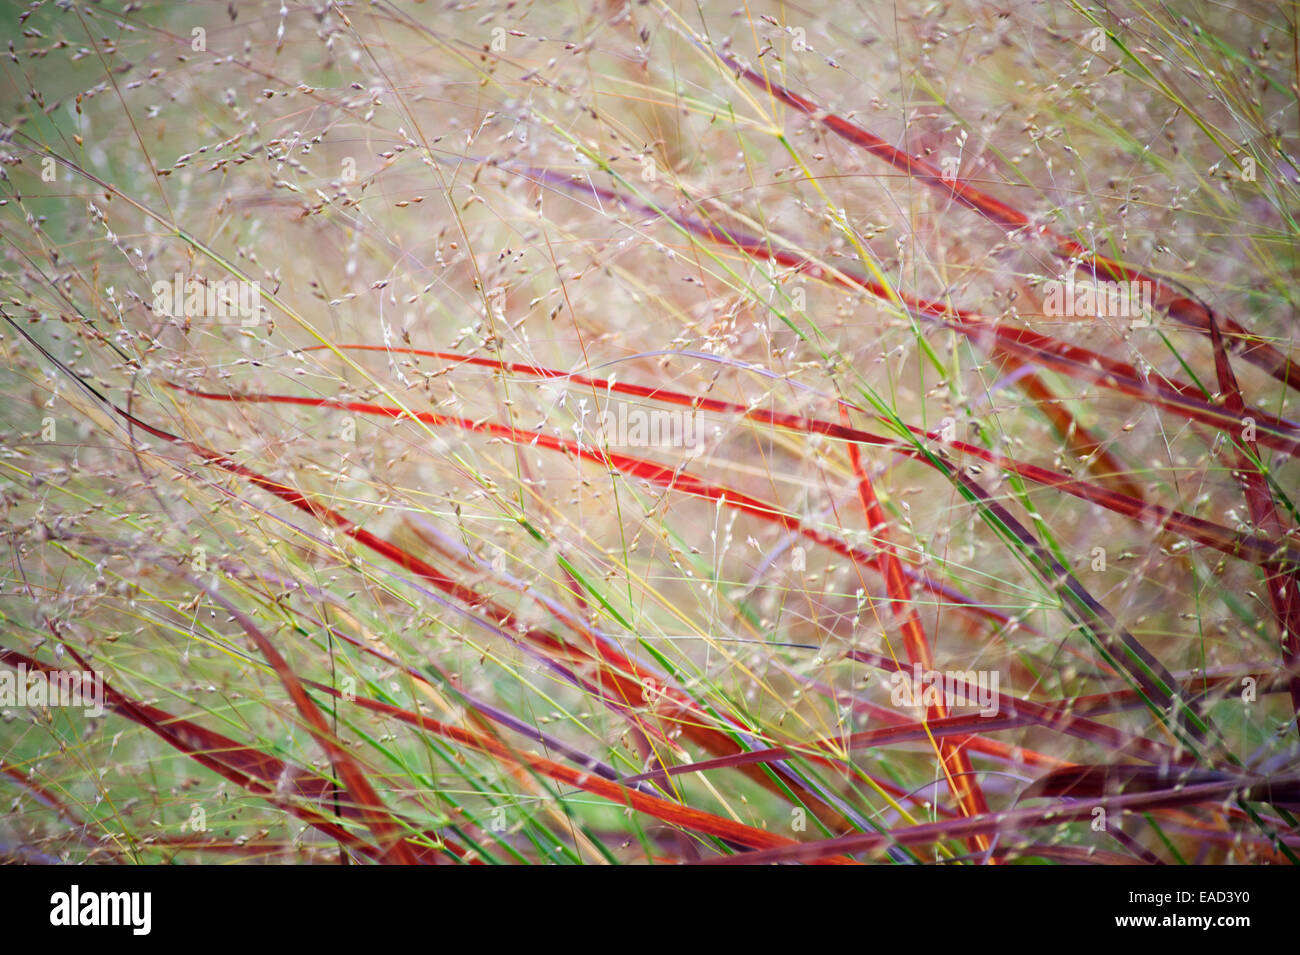 Grass, Switch grass, Panicum virgatum 'Rehbraun', Red subject. Stock Photo